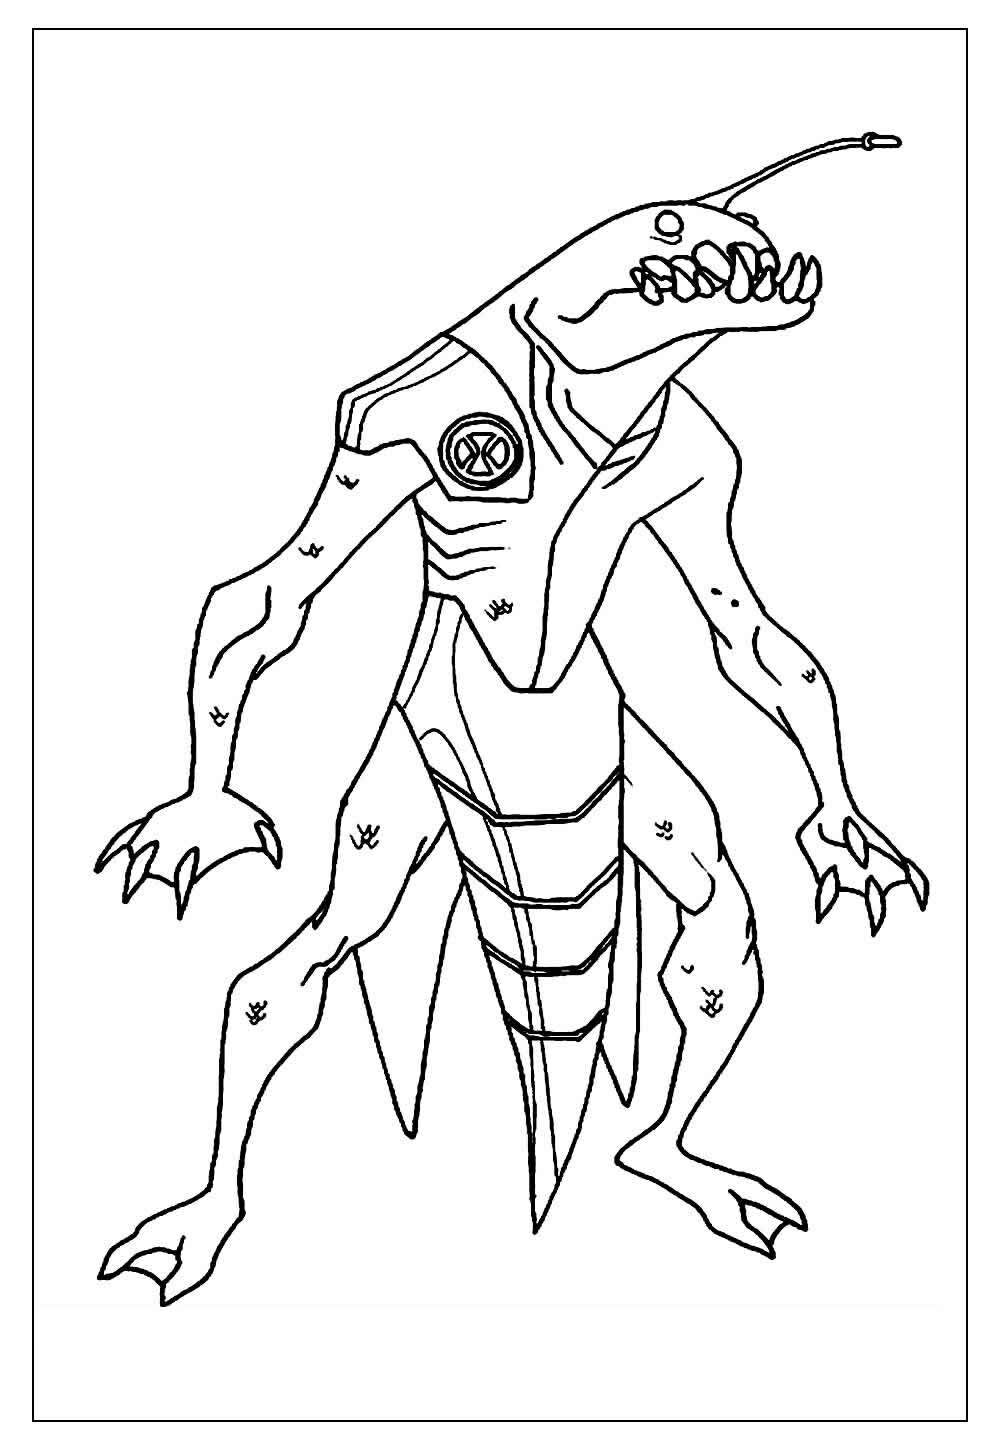 Imagem do Ben 10 para pintar e colorir - Monstro